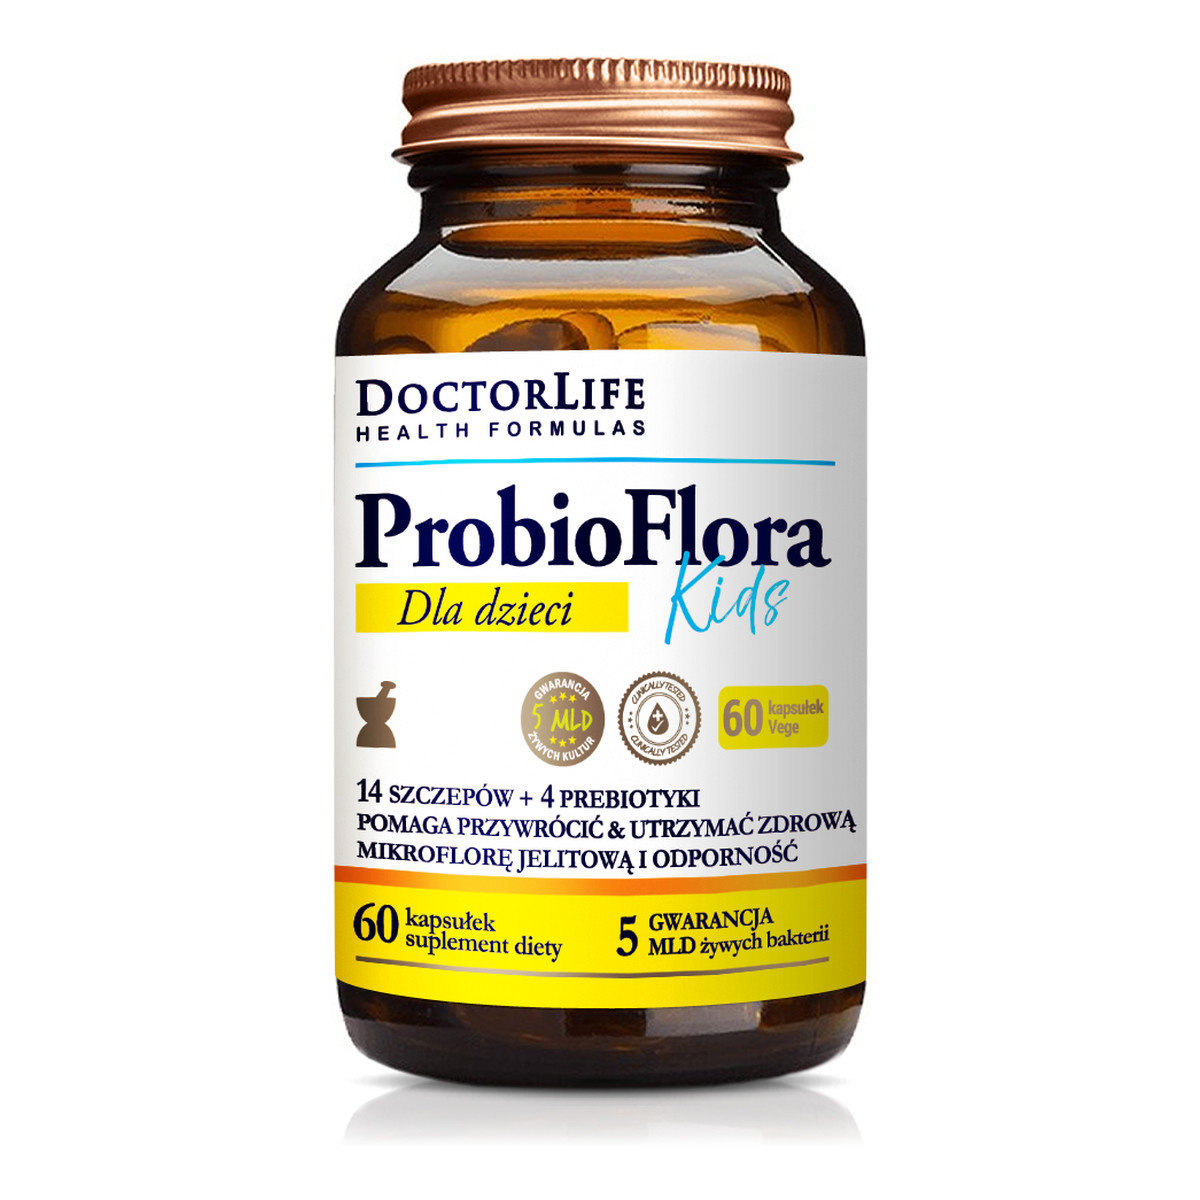 Doctor Life Probioflora kids probiotyki dla dzieci 14 szczepów & 4 prebiotyki suplement diety 60 kapsułek